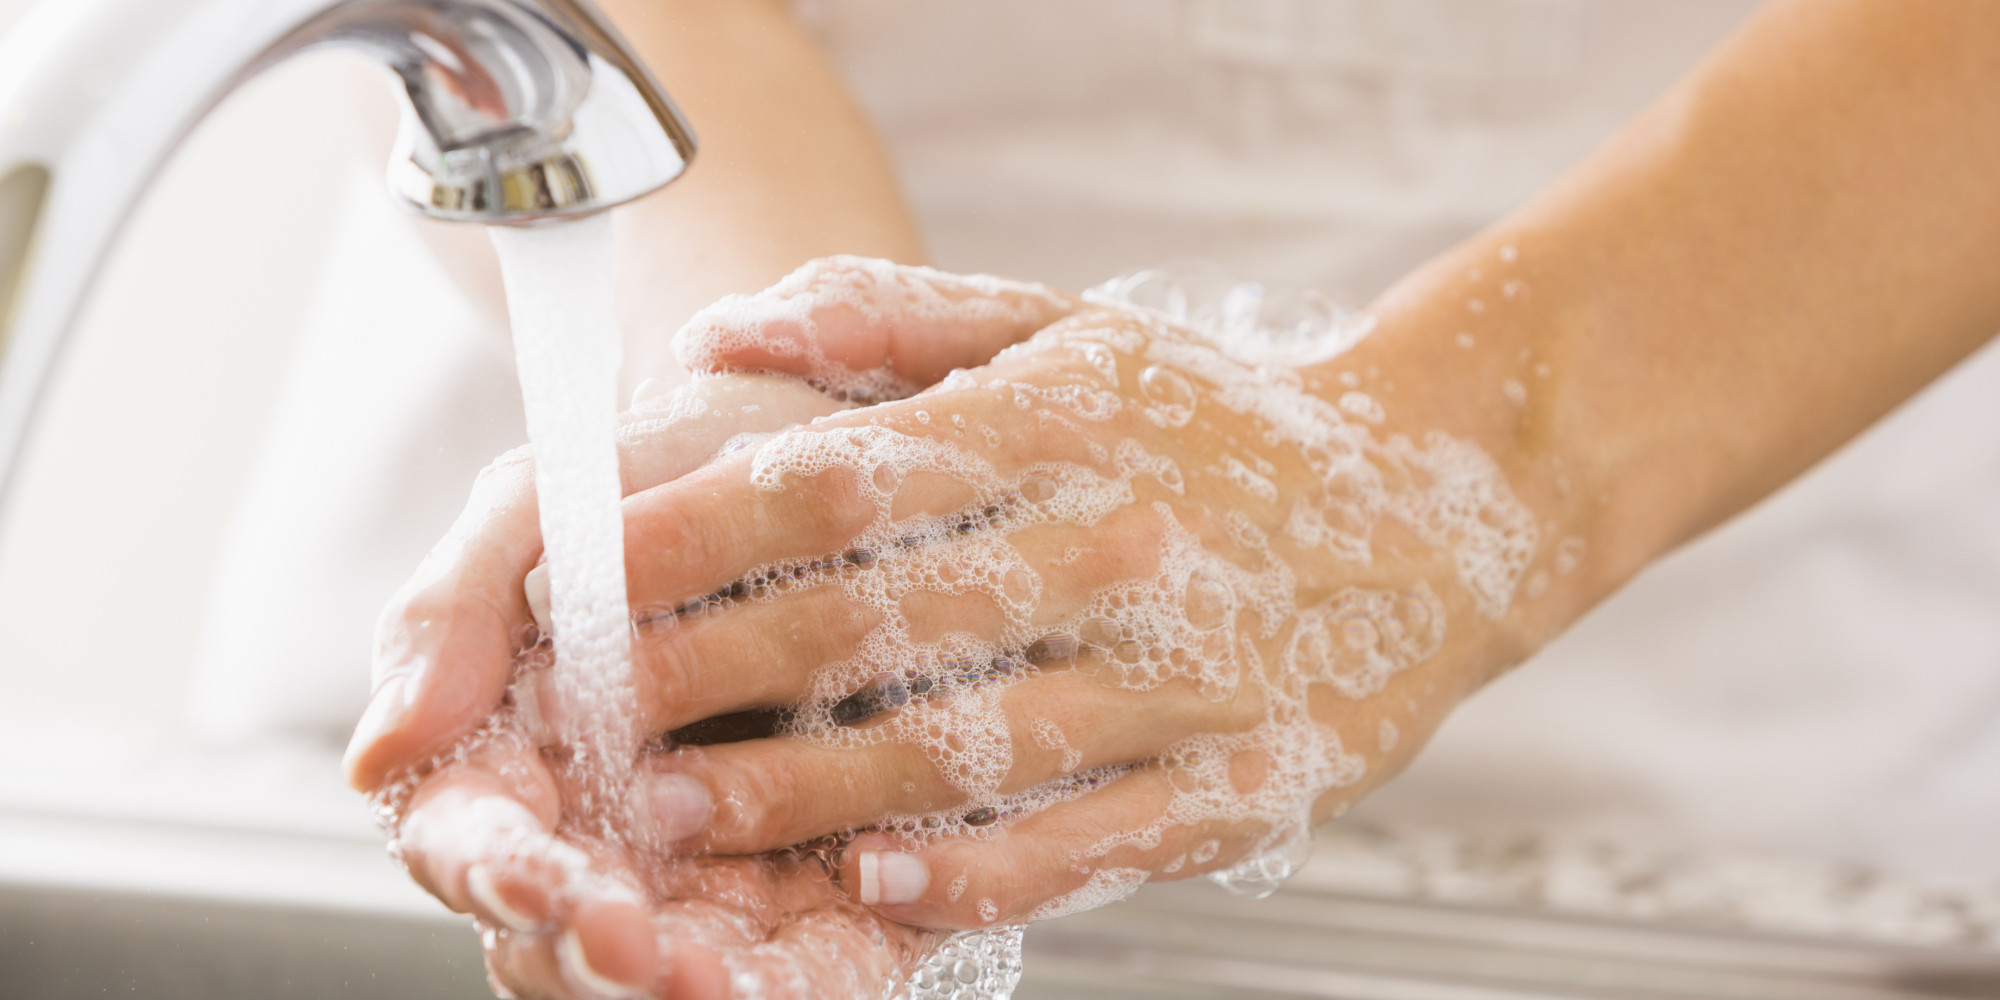 Πλύσιμο χεριών: Εσείς τα πλένετε με τον σωστό τρόπο; (βίντεο)